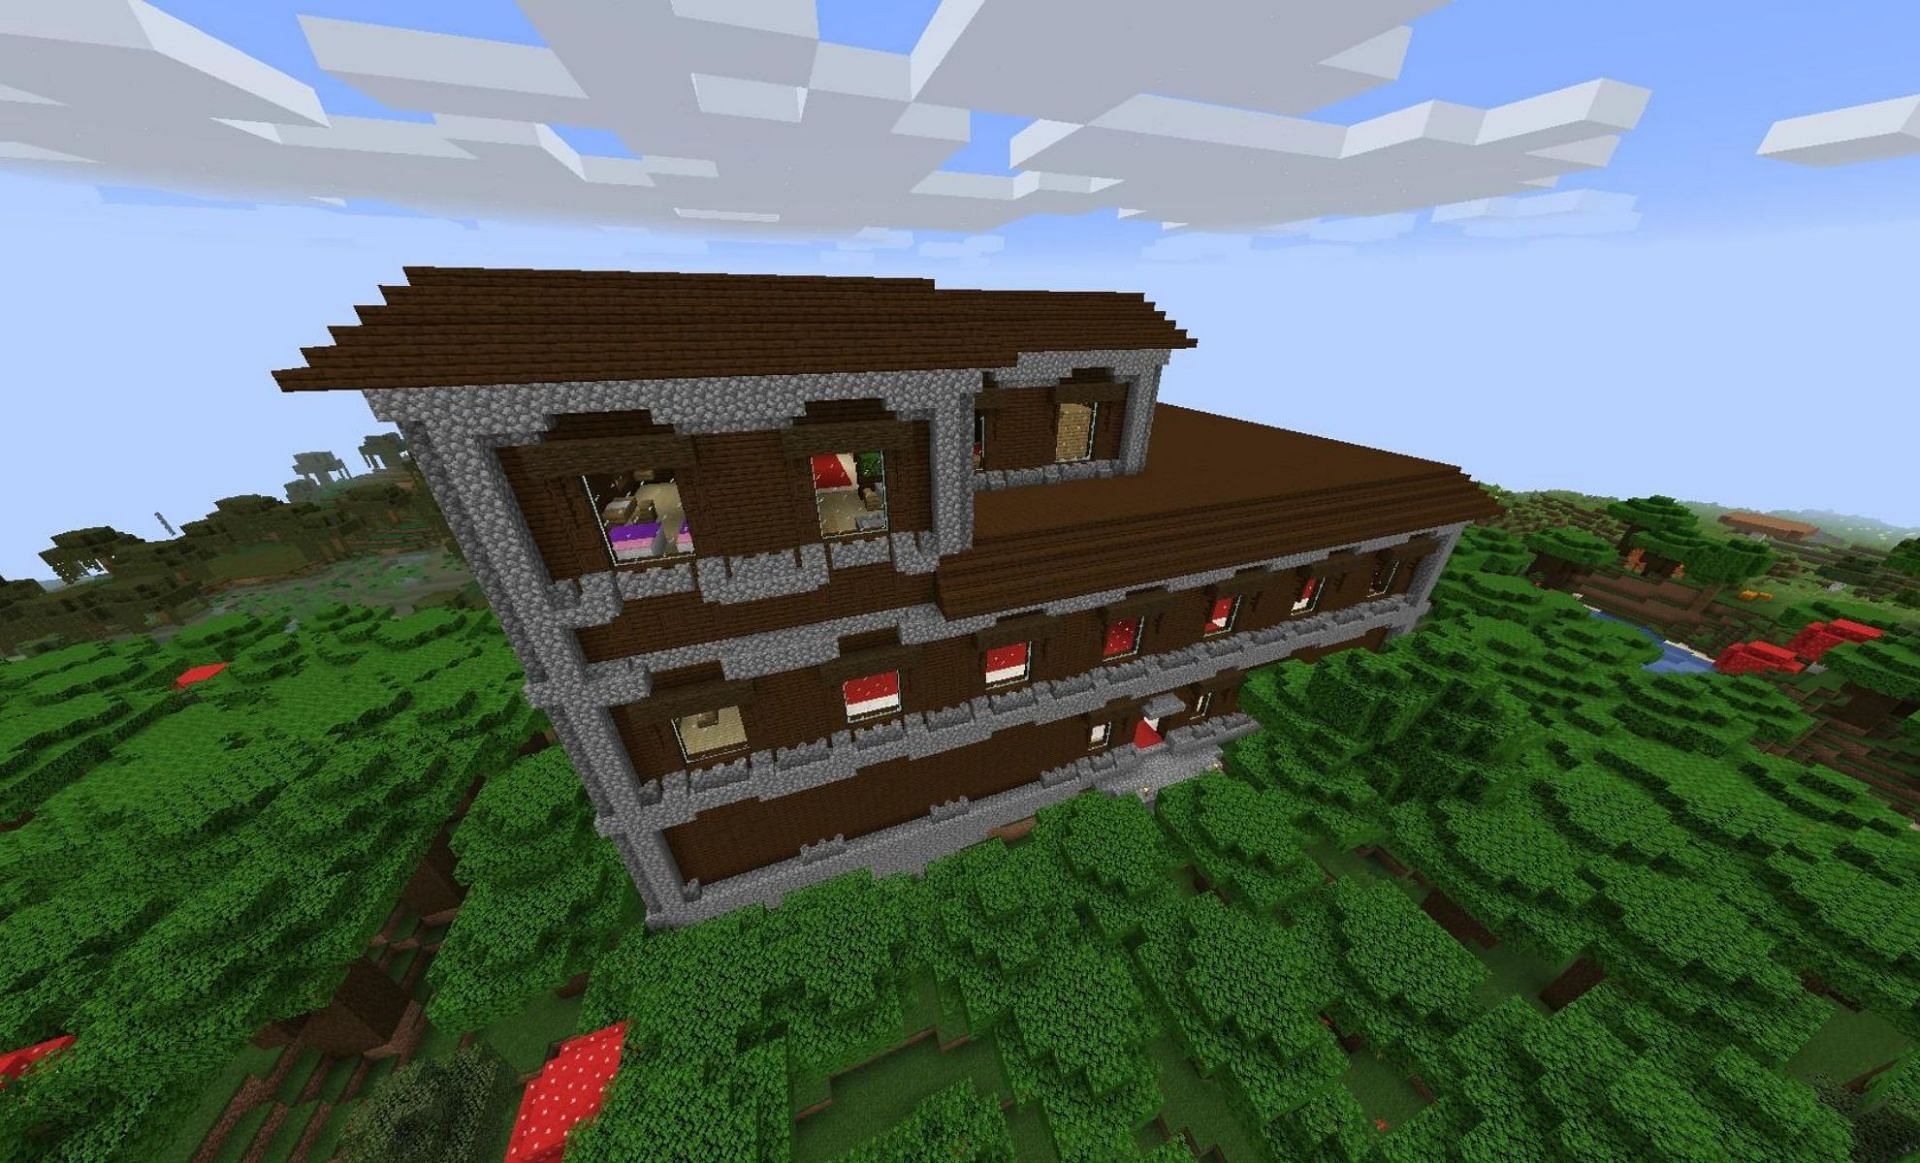 Woodland Mansion (Image via Minecraft Wiki)